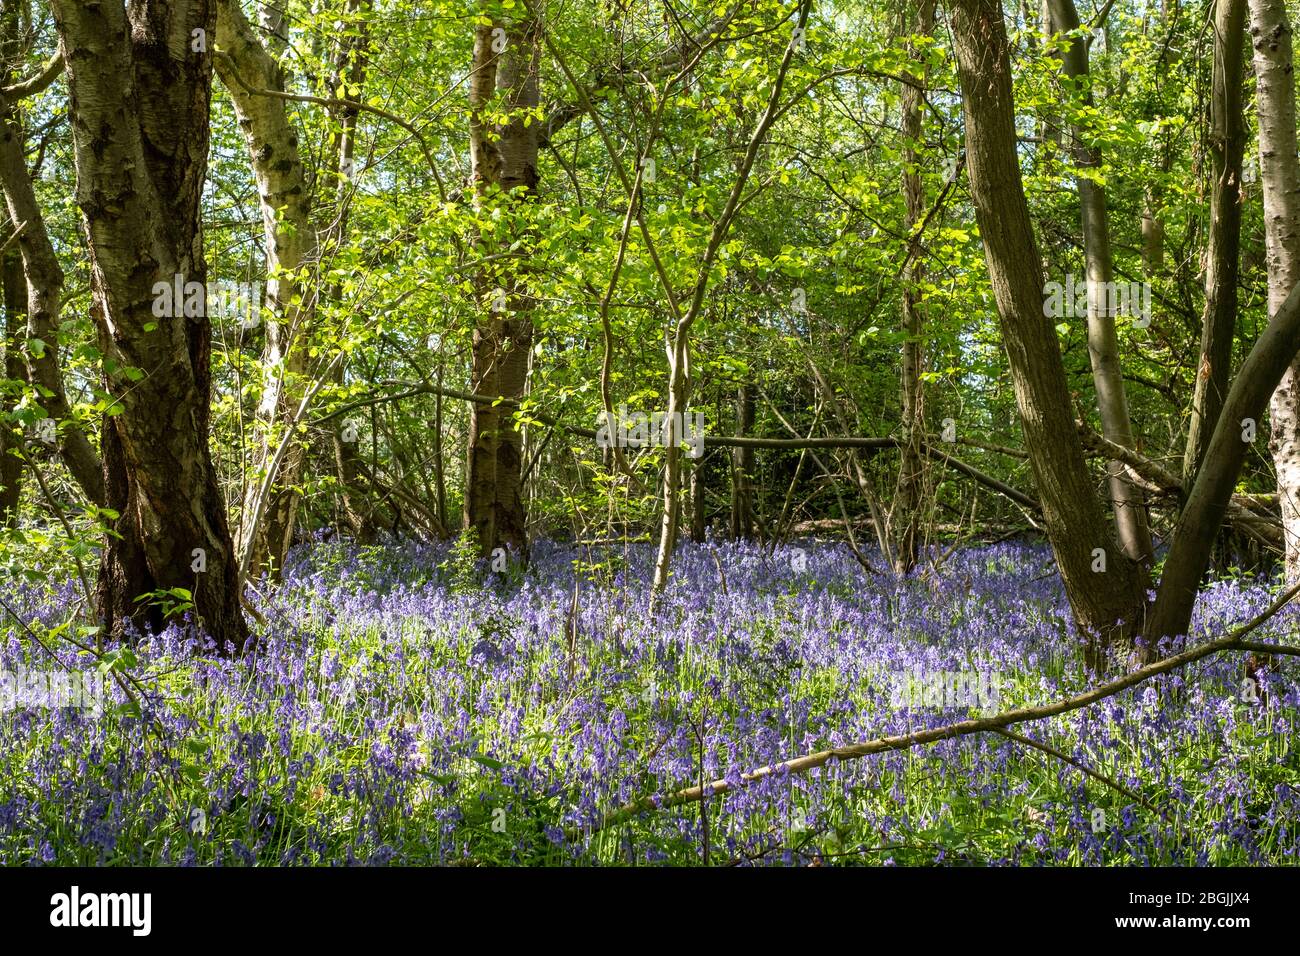 Gros plan des cloches qui poussent au milieu des arbres dans la nature dans Whippendell Woods, Watford, Hertforshire Royaume-Uni. Banque D'Images